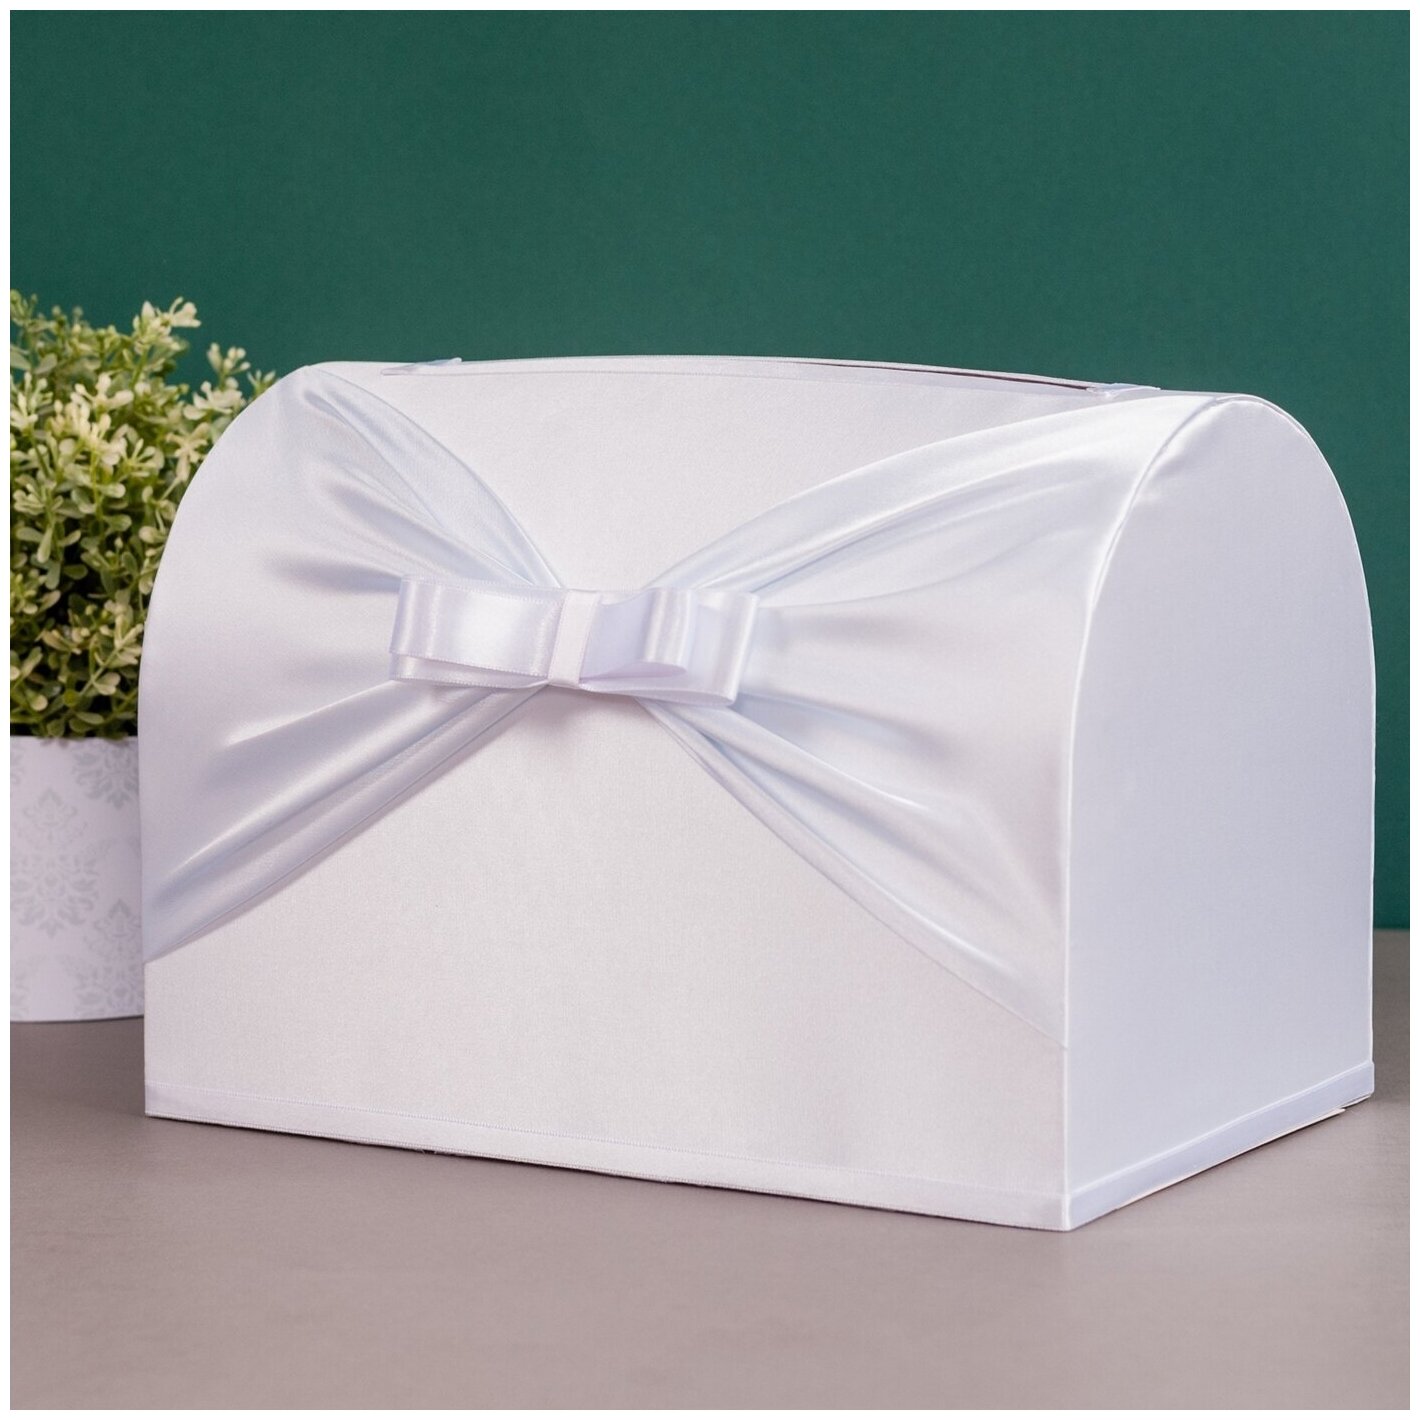 Семейный банк на свадьбу - сундчок с прорезью для денег "Белый стиль" из картона с атласным декором и бантом белого цвета